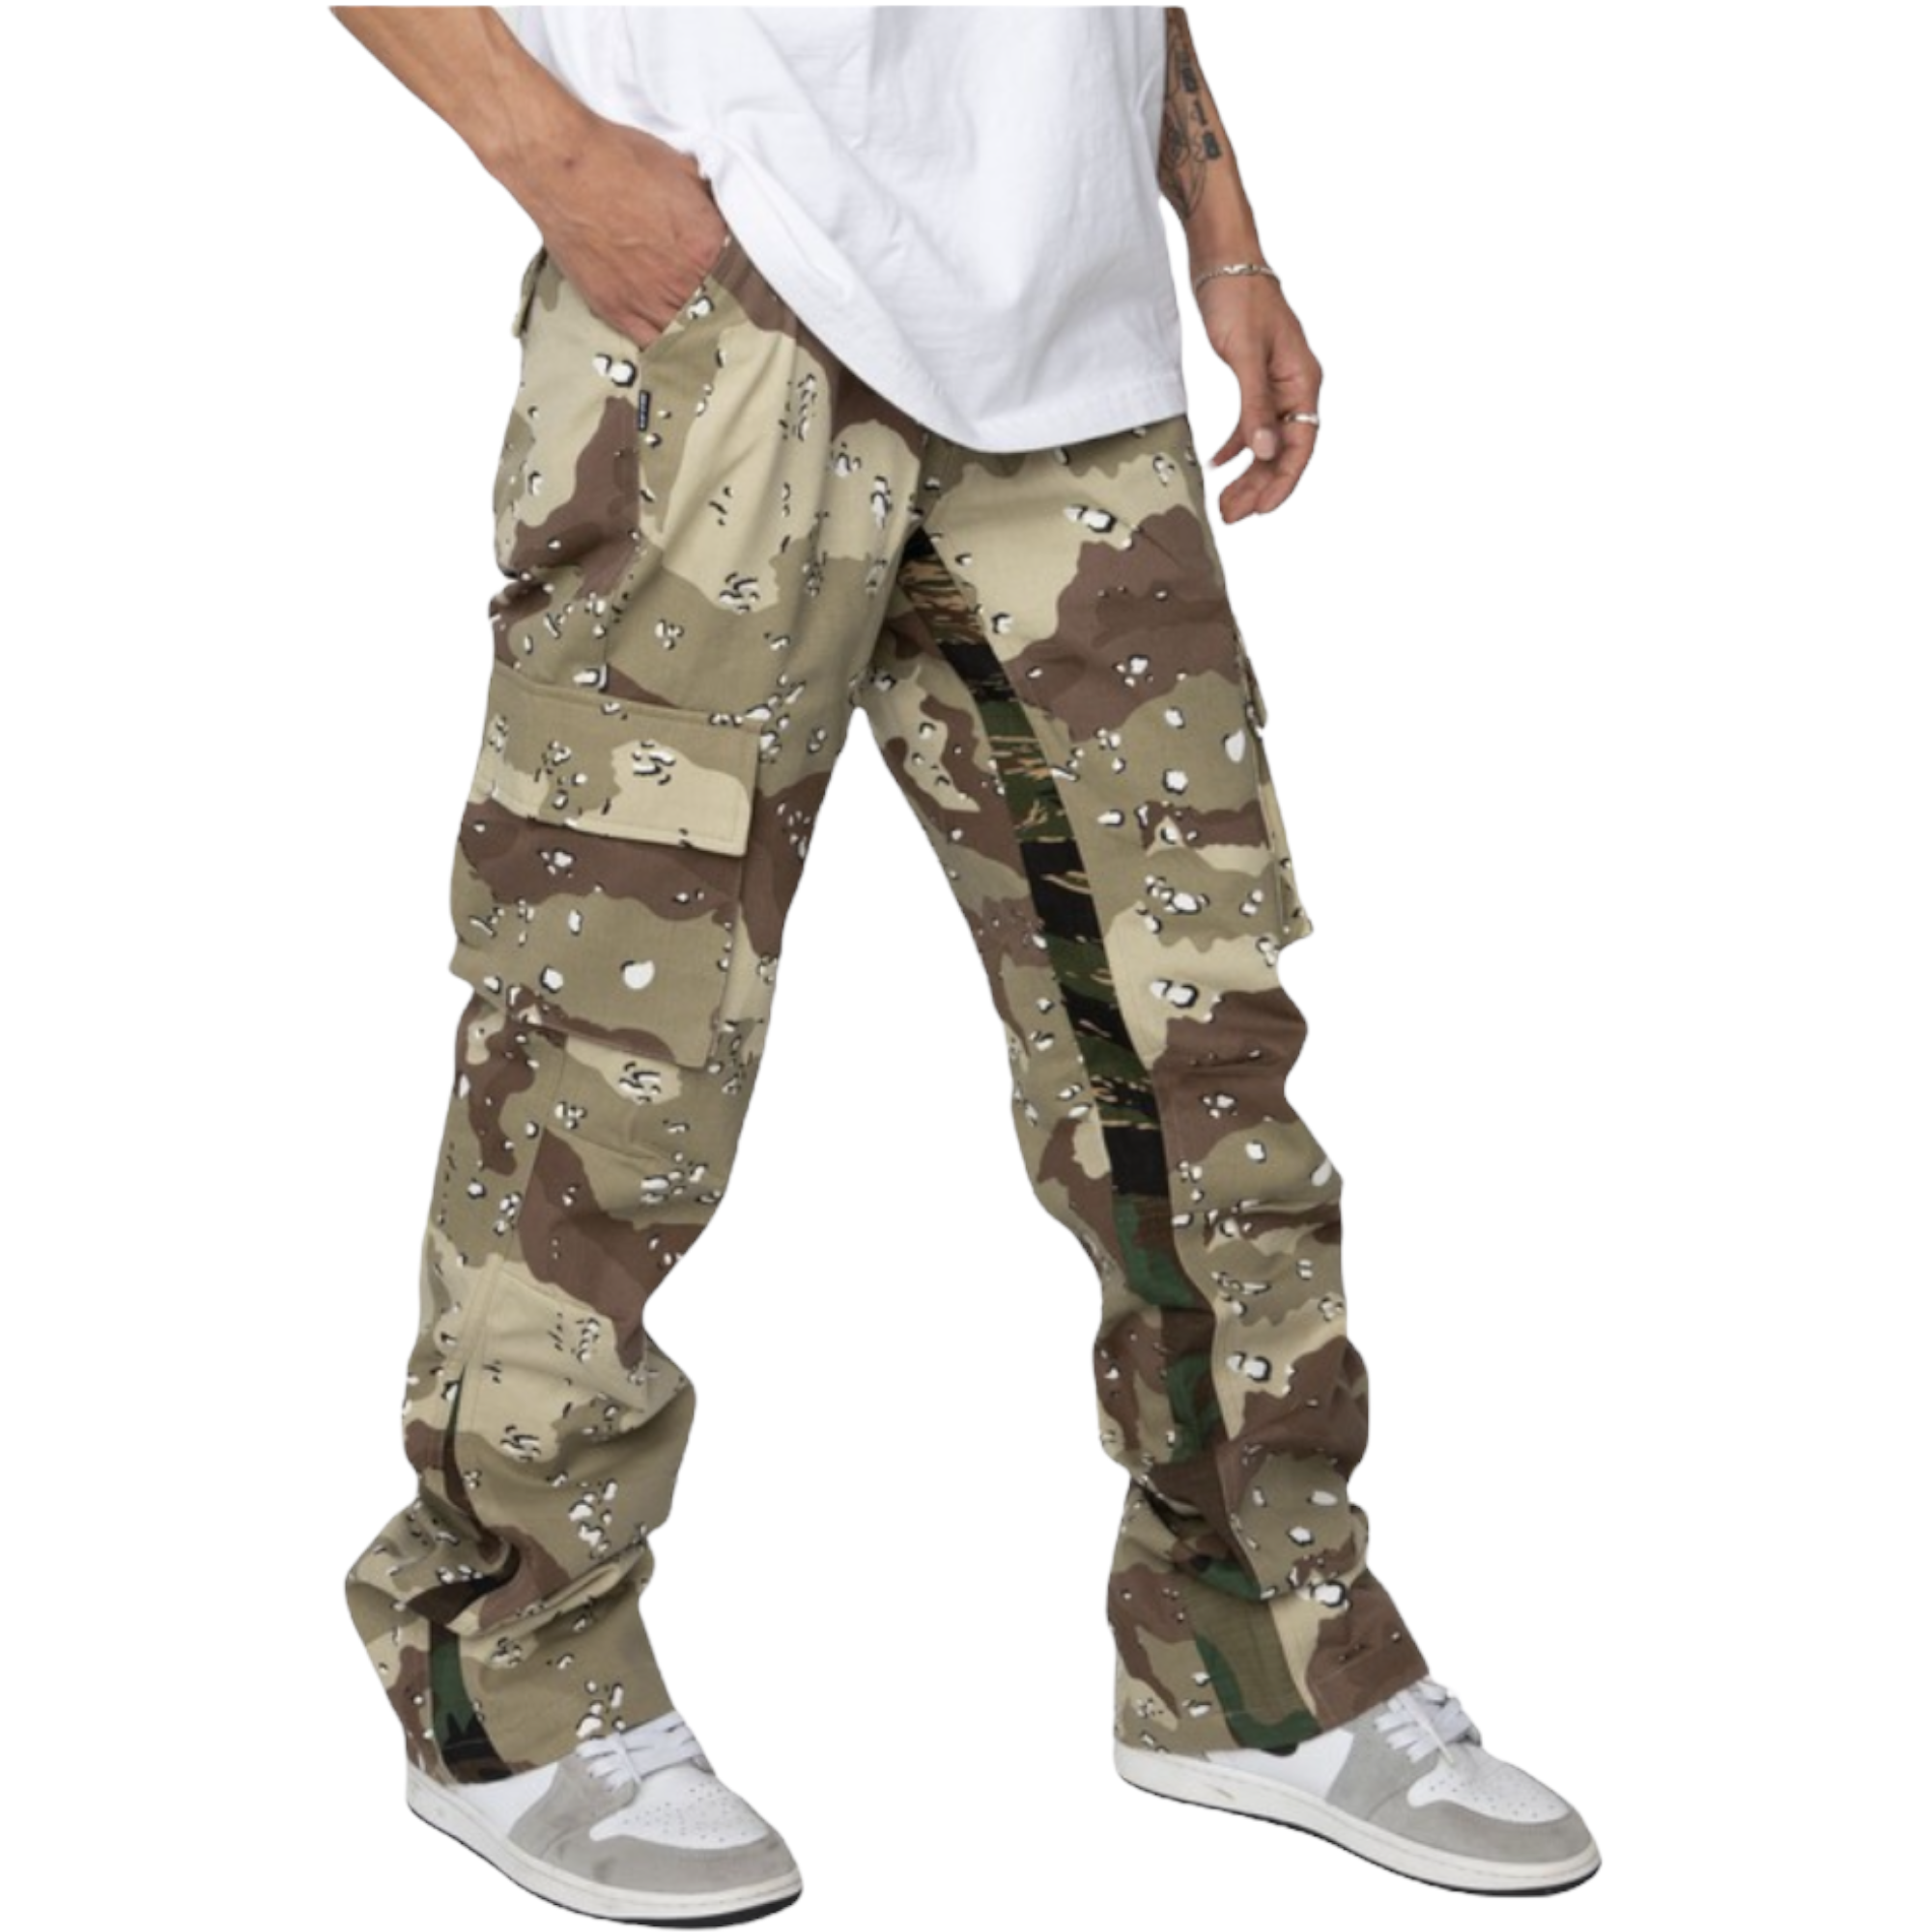 Army mixed pants - ggfiona